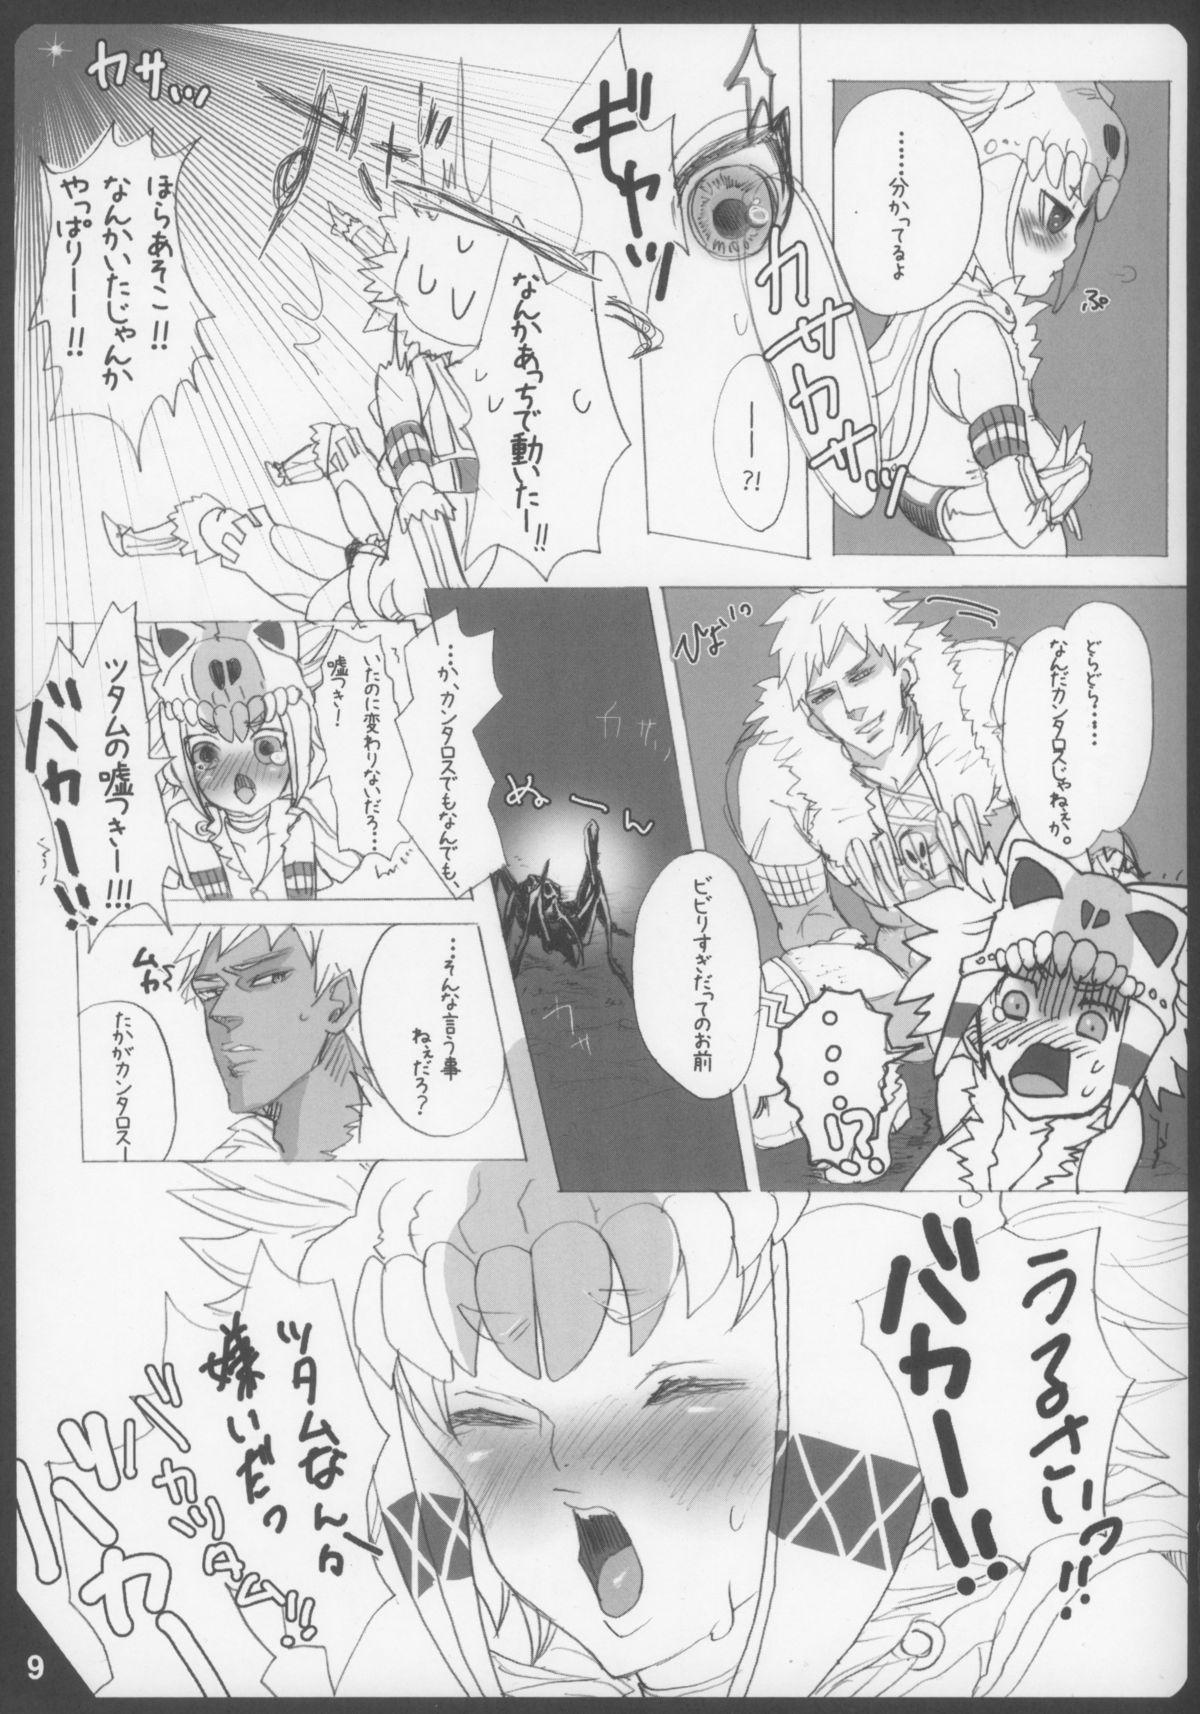 Man Mitsurin no Arashi Daisakusen - Monster hunter Shesafreak - Page 9